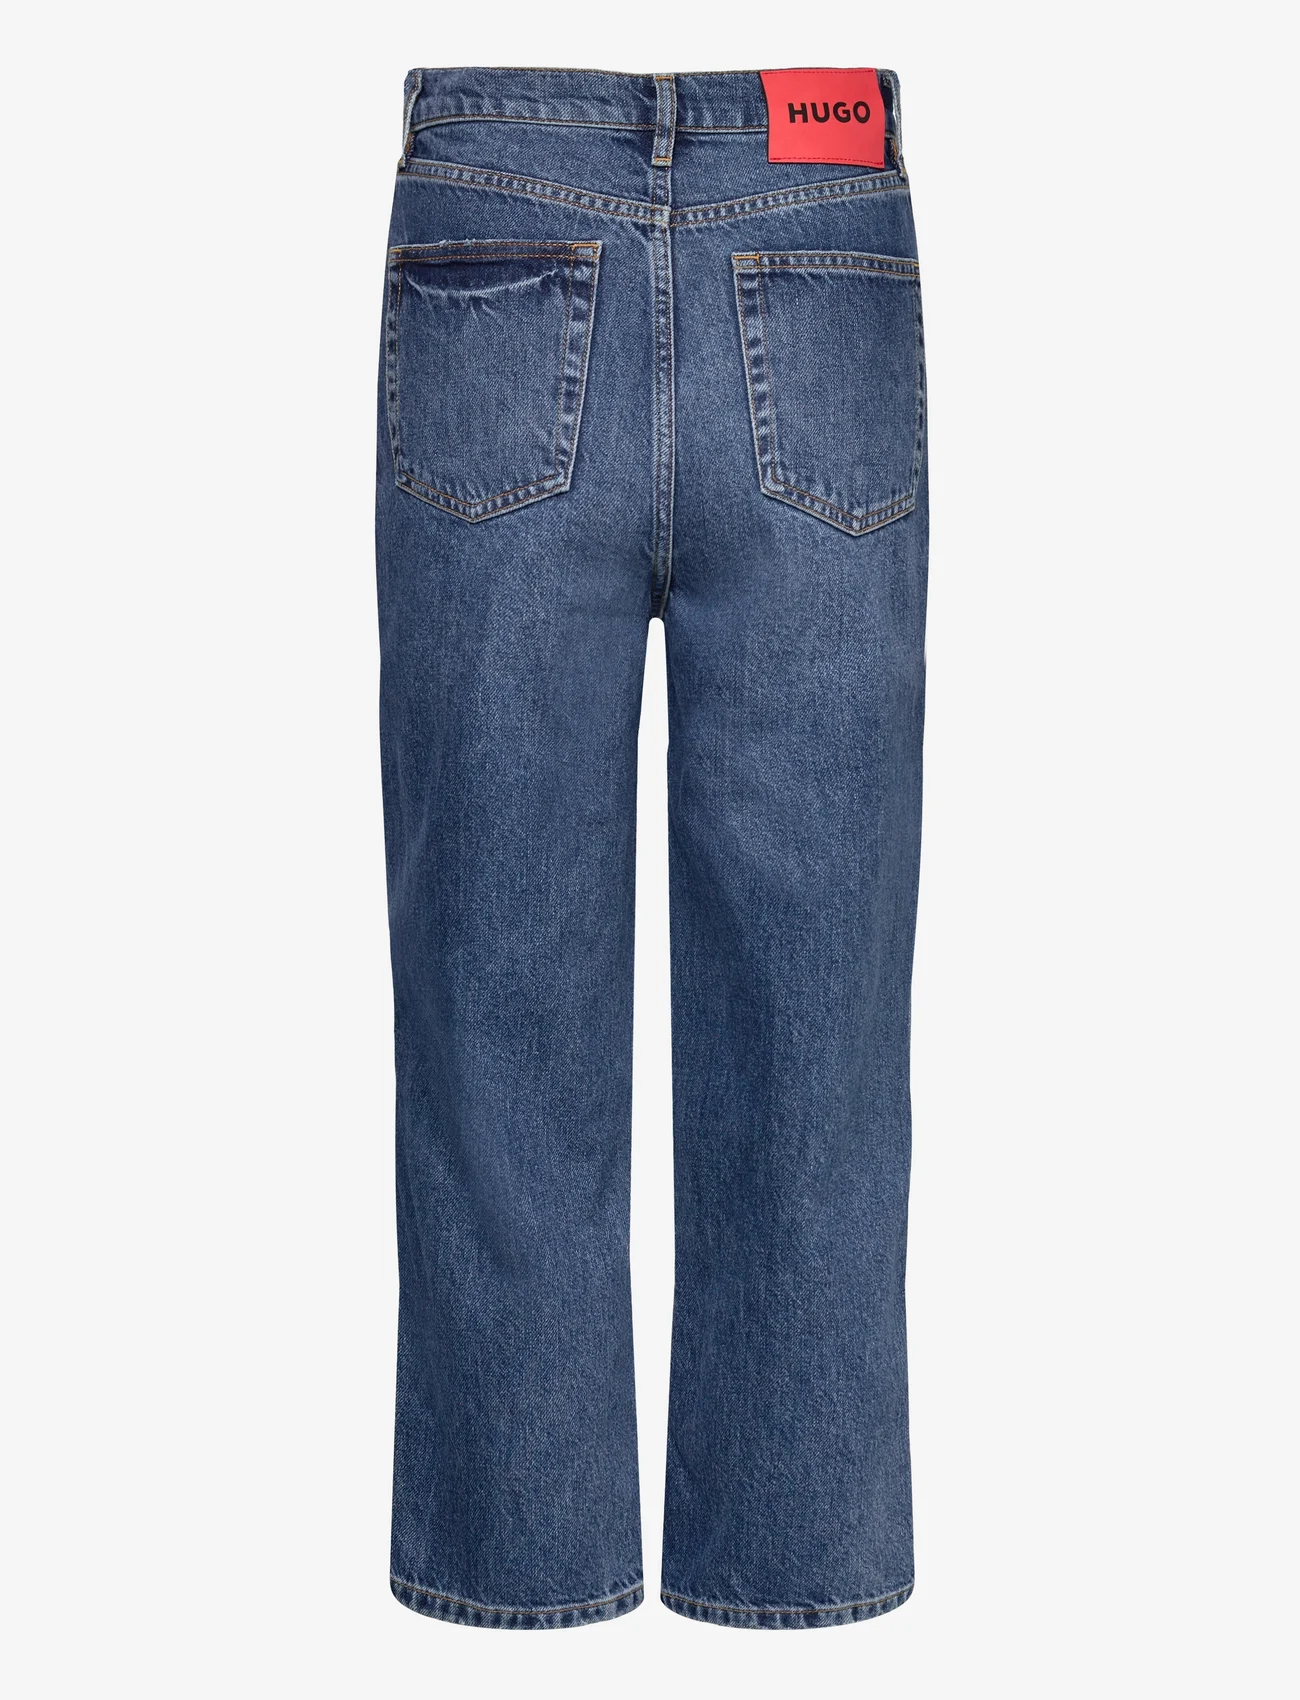 HUGO - 933 - straight jeans - medium blue - 1